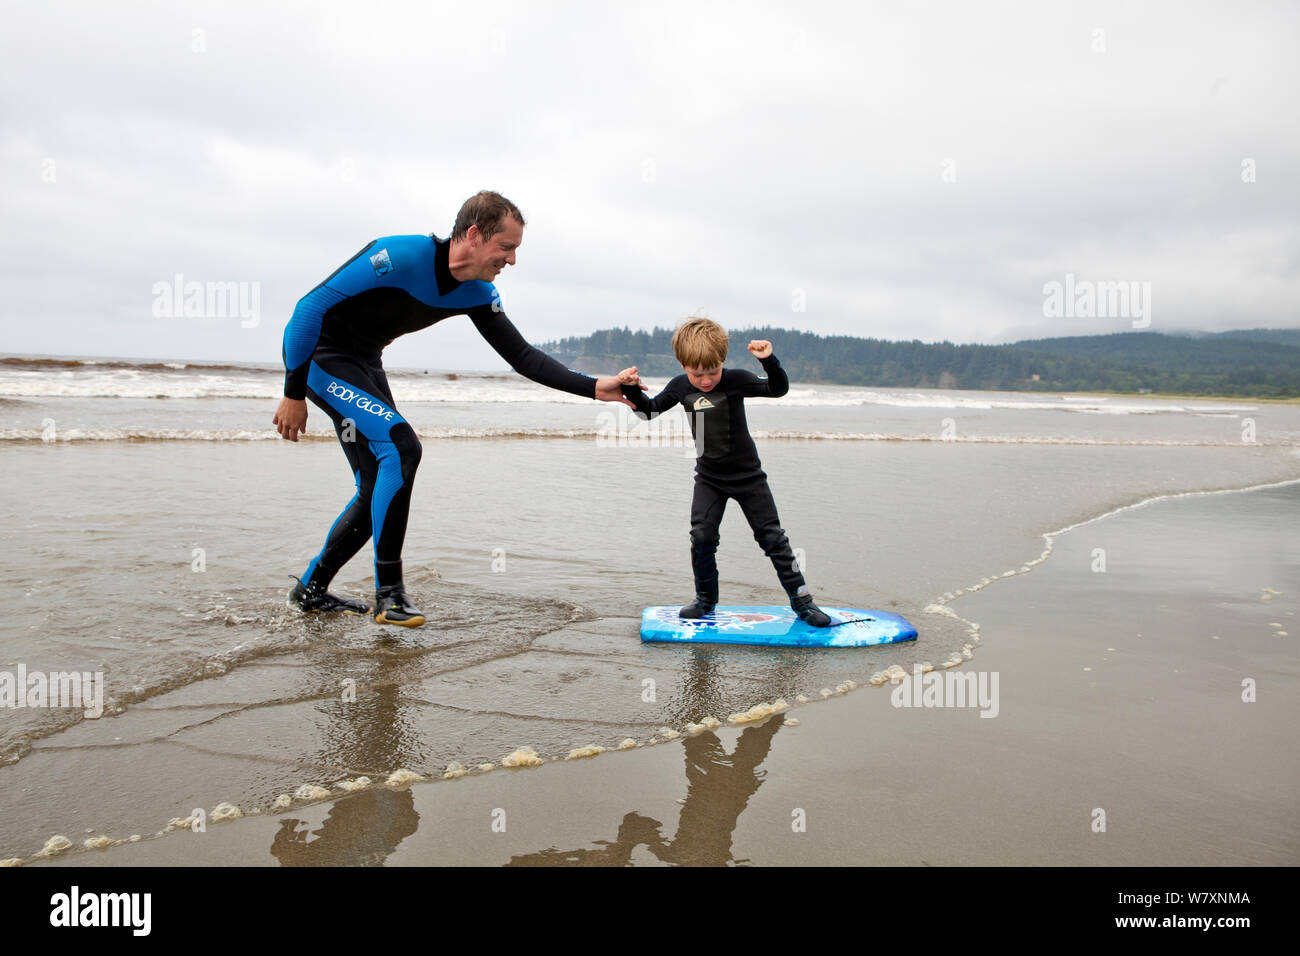 Nate Harrison enseñar a su hijo Gabriel de cómo navegar, Hobuck Beach, Reserva Makah, Washington, Estados Unidos, agosto de 2014. Modelo liberado. Modelo liberado. Foto de stock